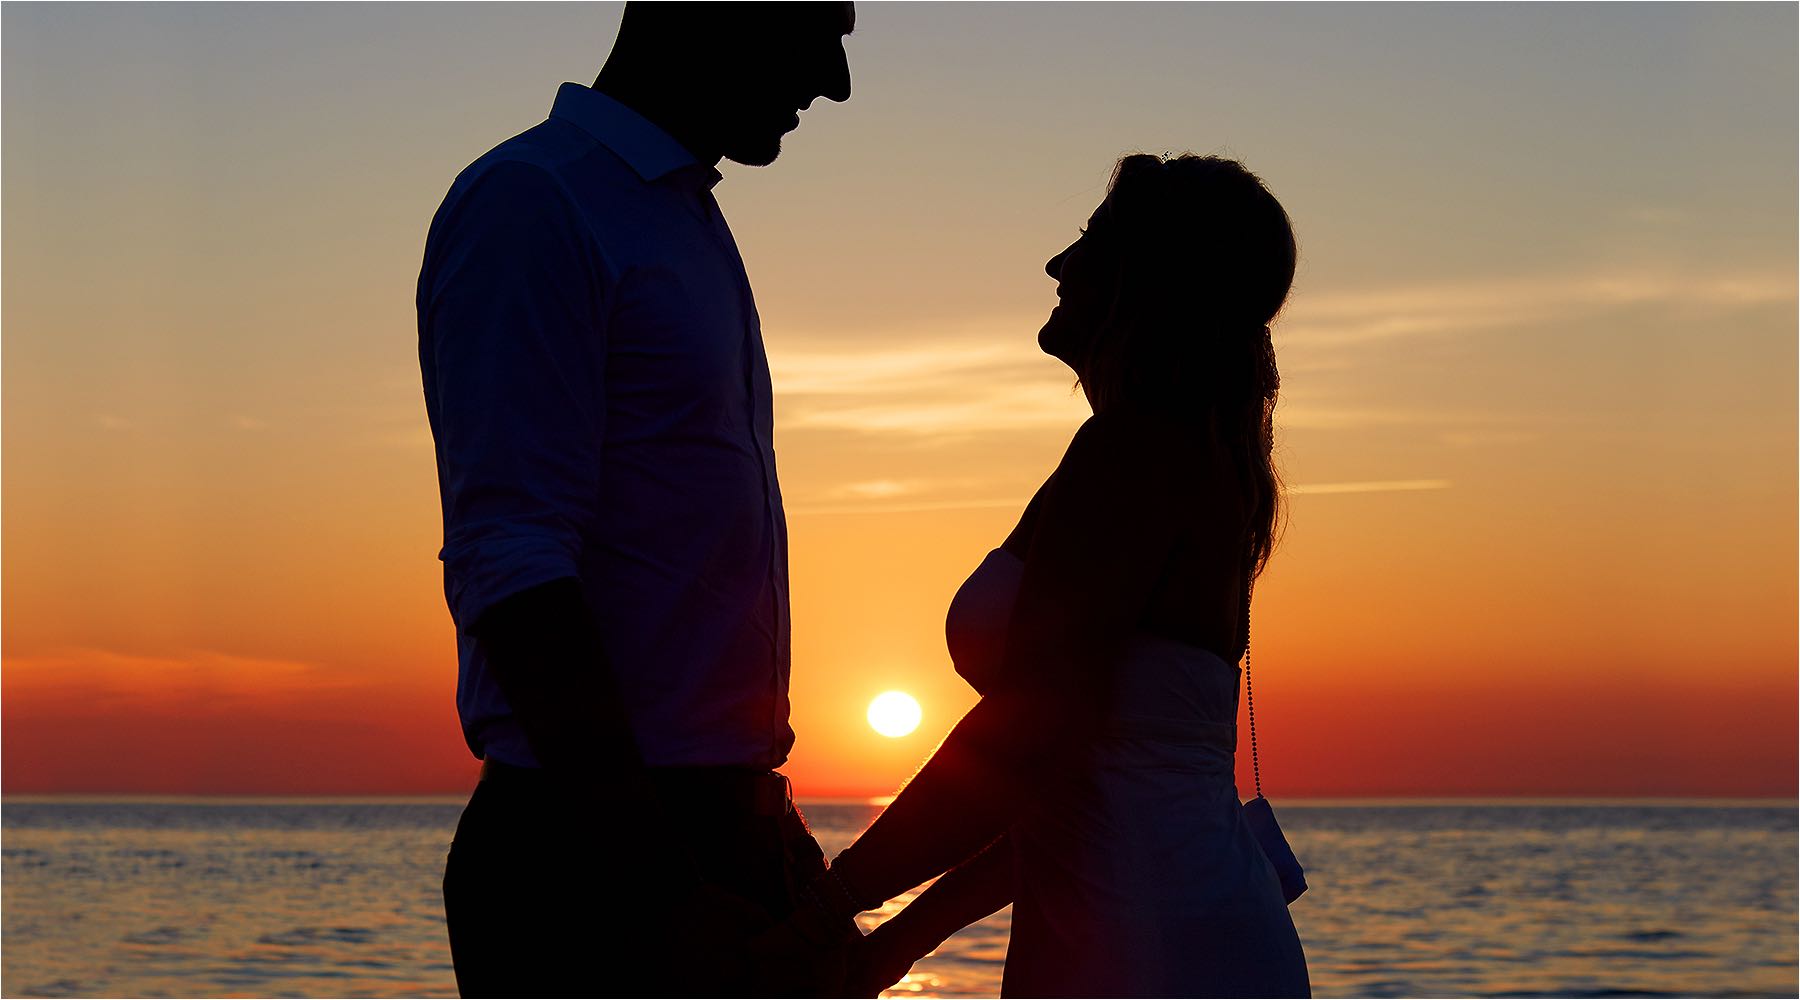  Ein unvergesslicher Augenblick am ende eines schönen Tages. Das Brautpaar vor der untergehenden Sonne am Meer. Copyright by Fotostudio Jörg Riethausen 